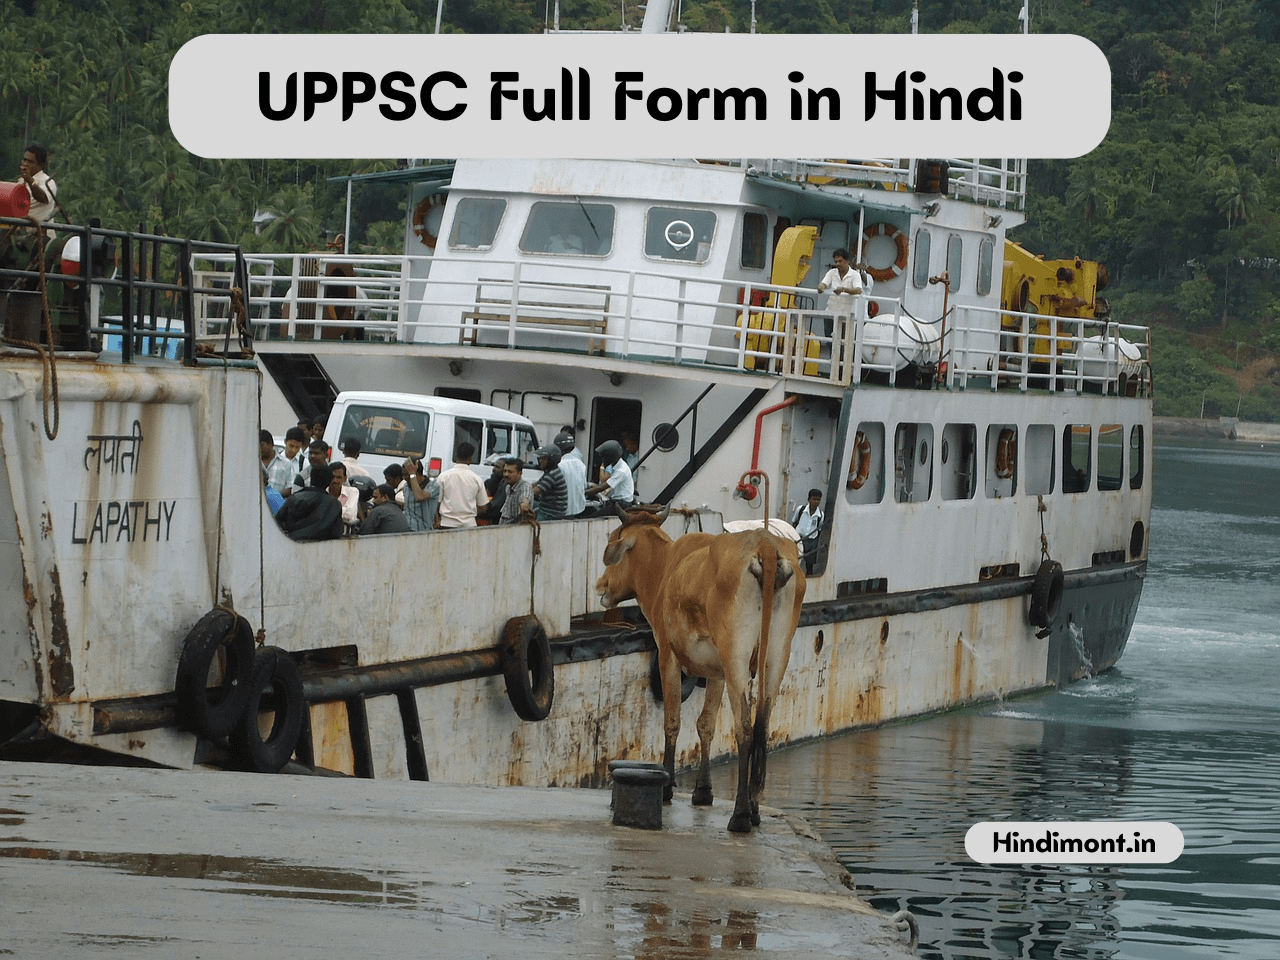 UPPSC Full Form in Hindi